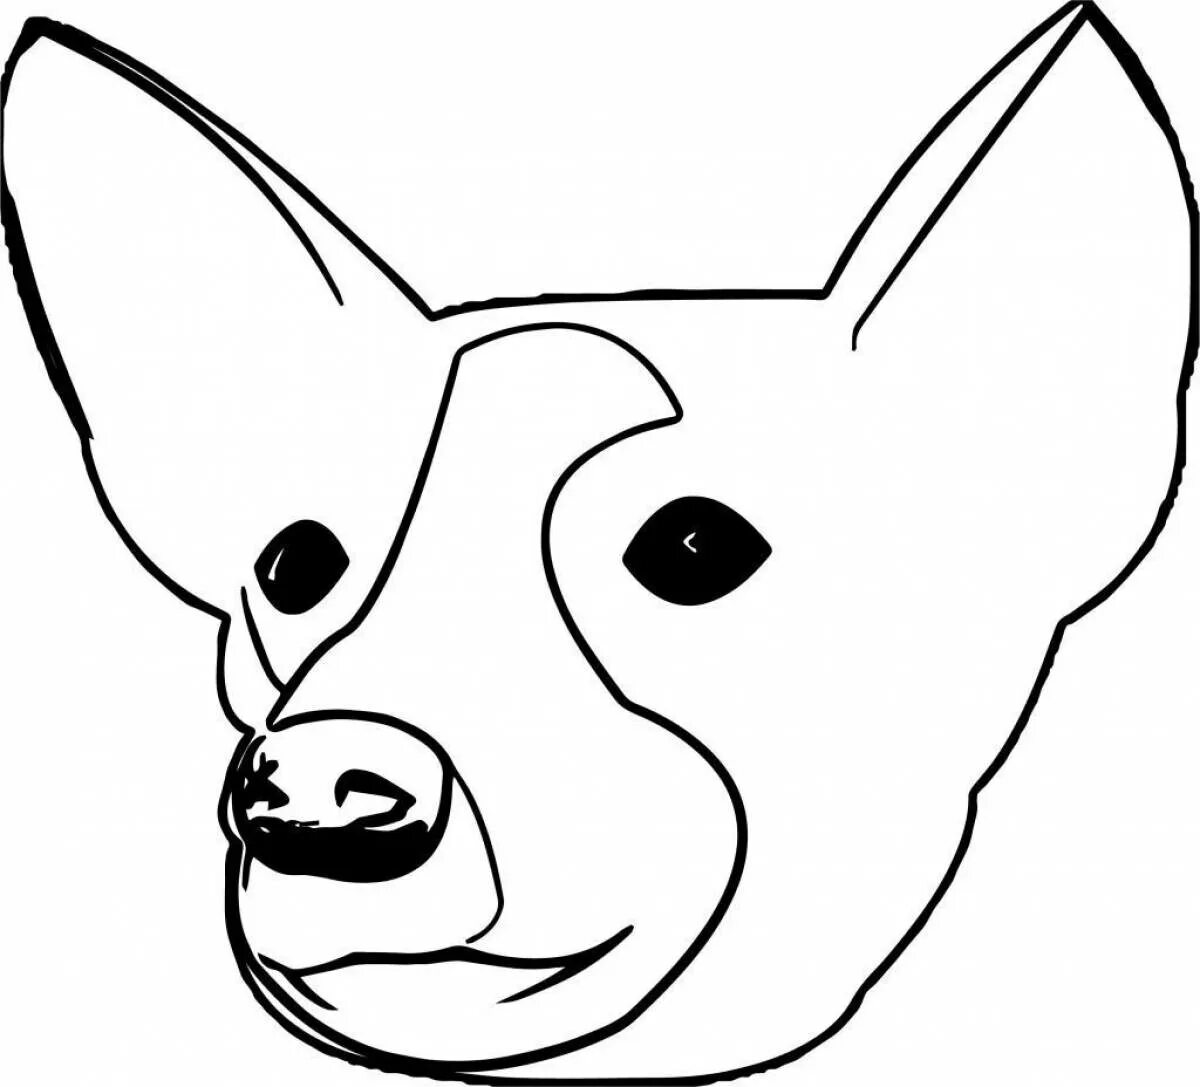 Распечатать голову собаки. Голова собаки раскраска. Голова собаки раскраска для детей. Морда собаки рисунок. Силуэт головы собаки.